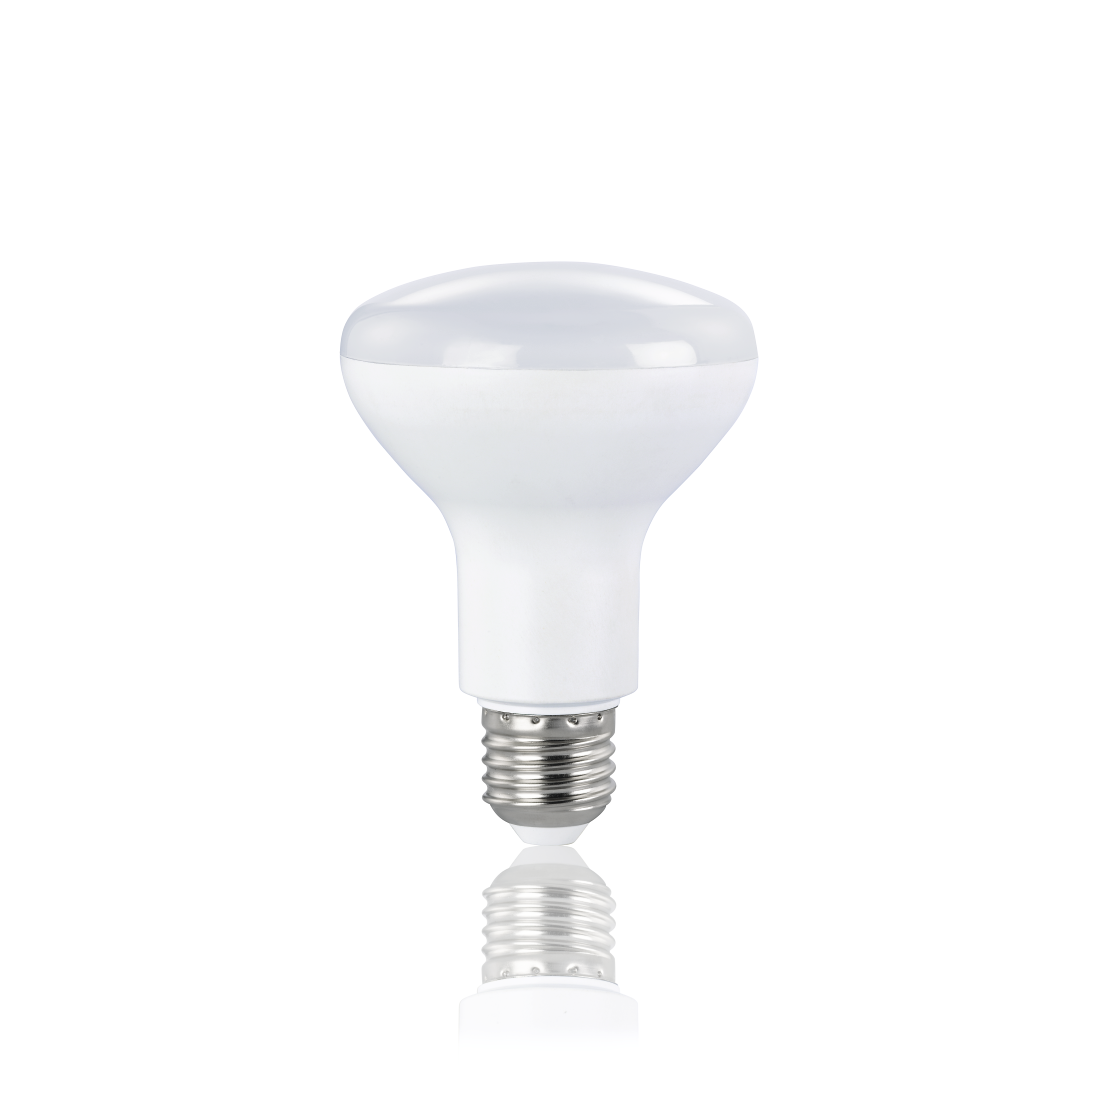 abx2 High-Res Image 2 - Xavax, Ampoule LED, E27, 1050lm rempl. 75W, ampoule à réfl. R80, blanc chaud